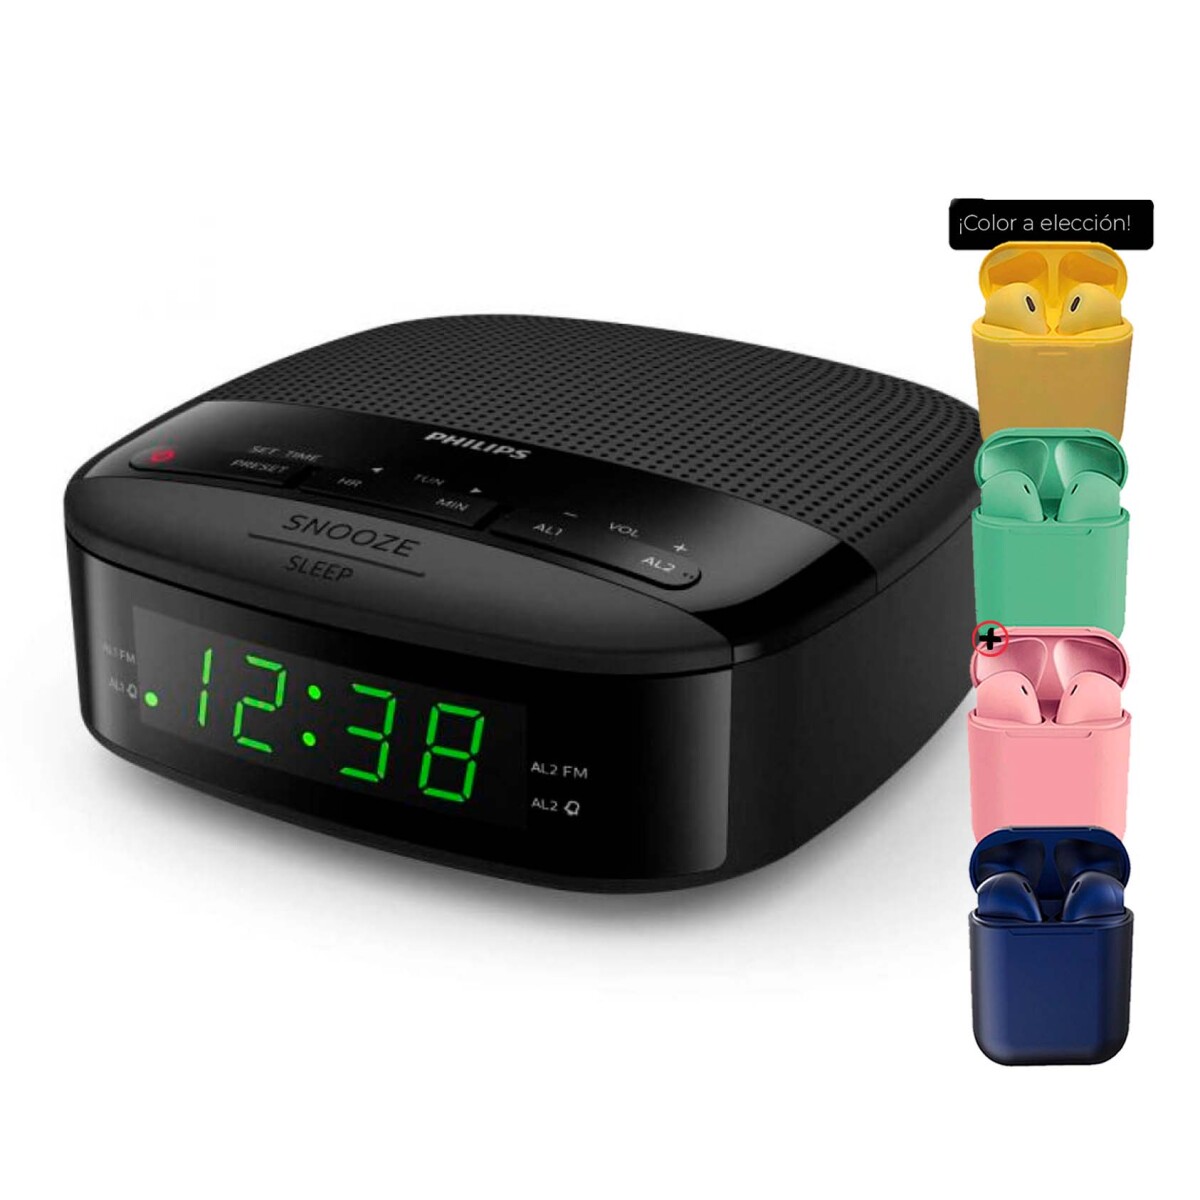 Radio Reloj Philips Digital Tar3502 Alarma Dual Sintonizador + Auriculares 